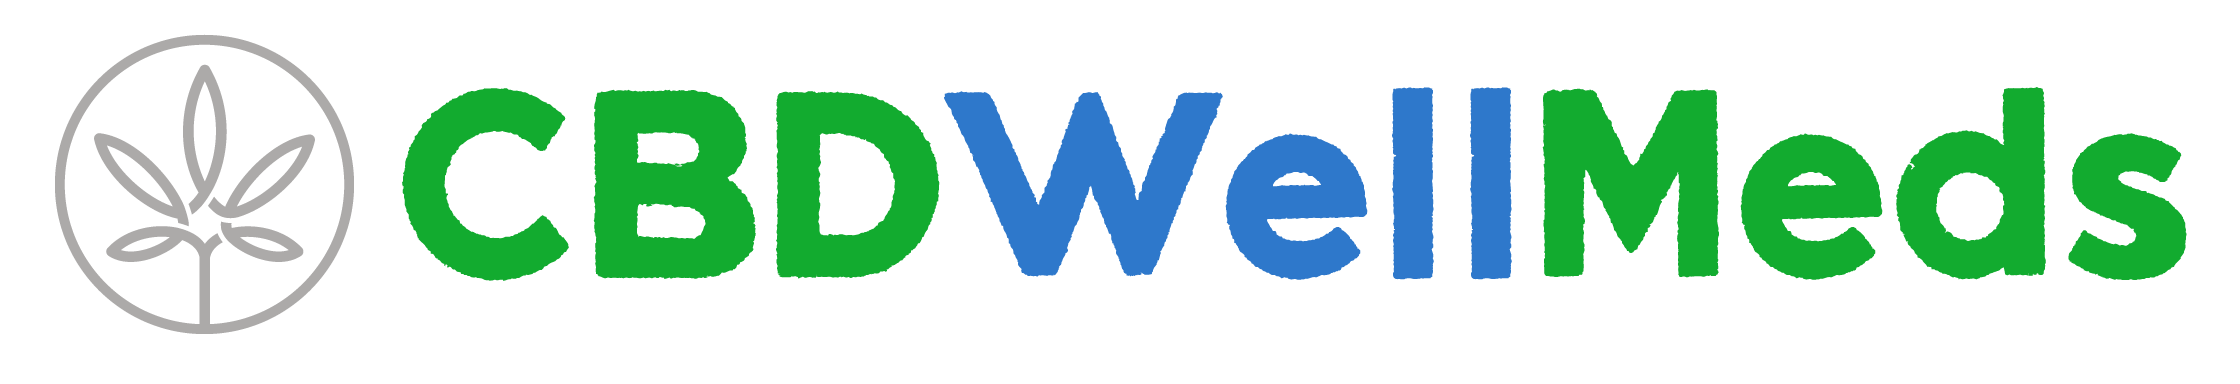 CBD Well Meds Logo